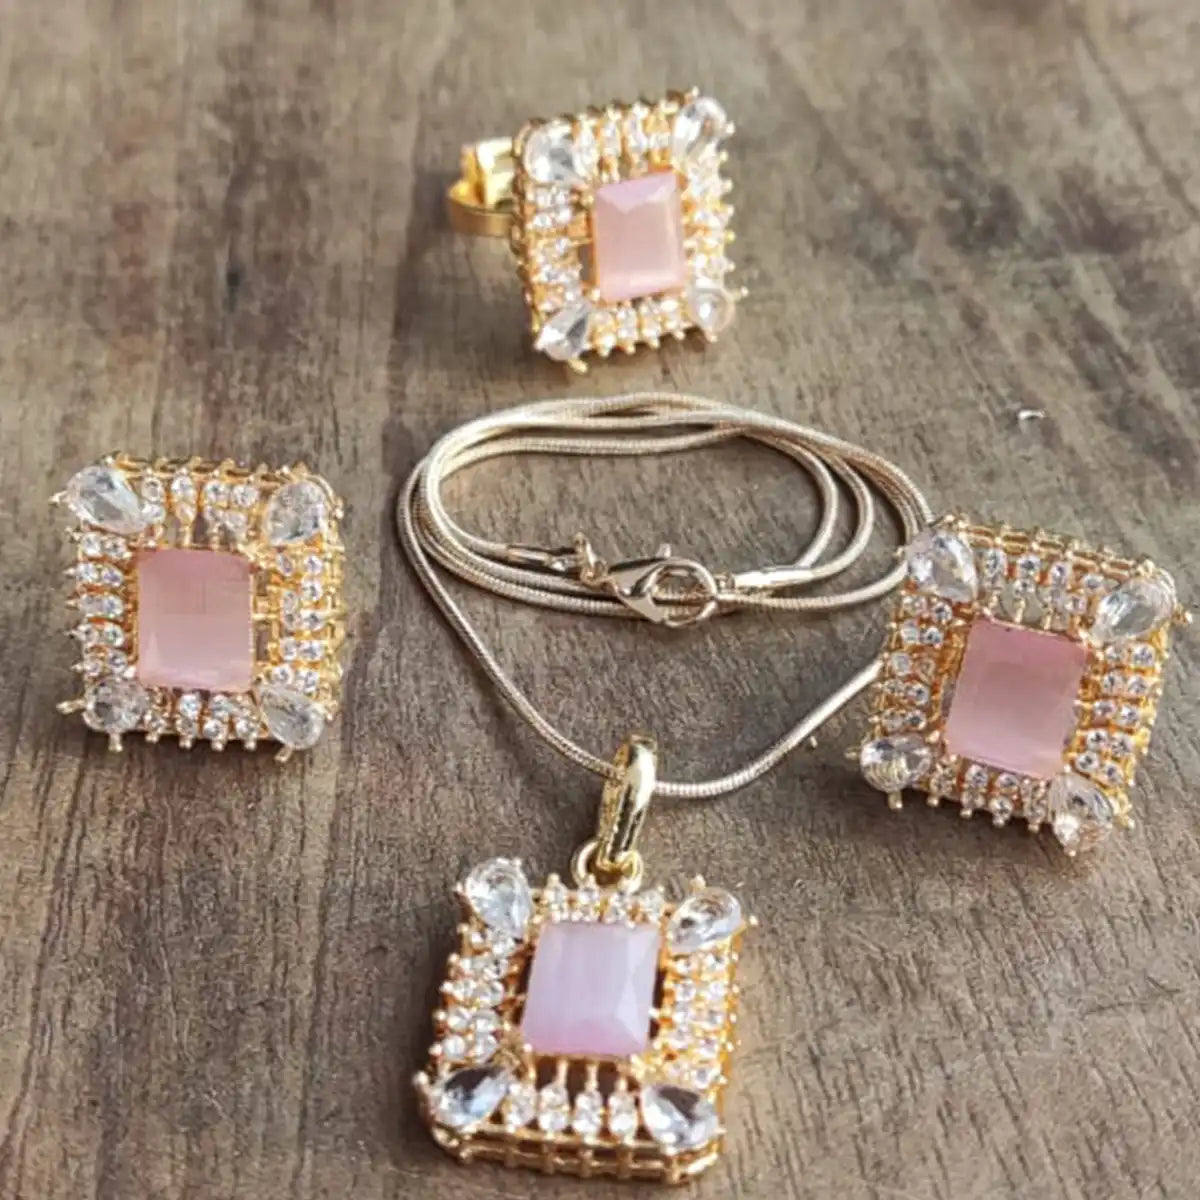 tops jewellery design in pakistan njc-002 pink